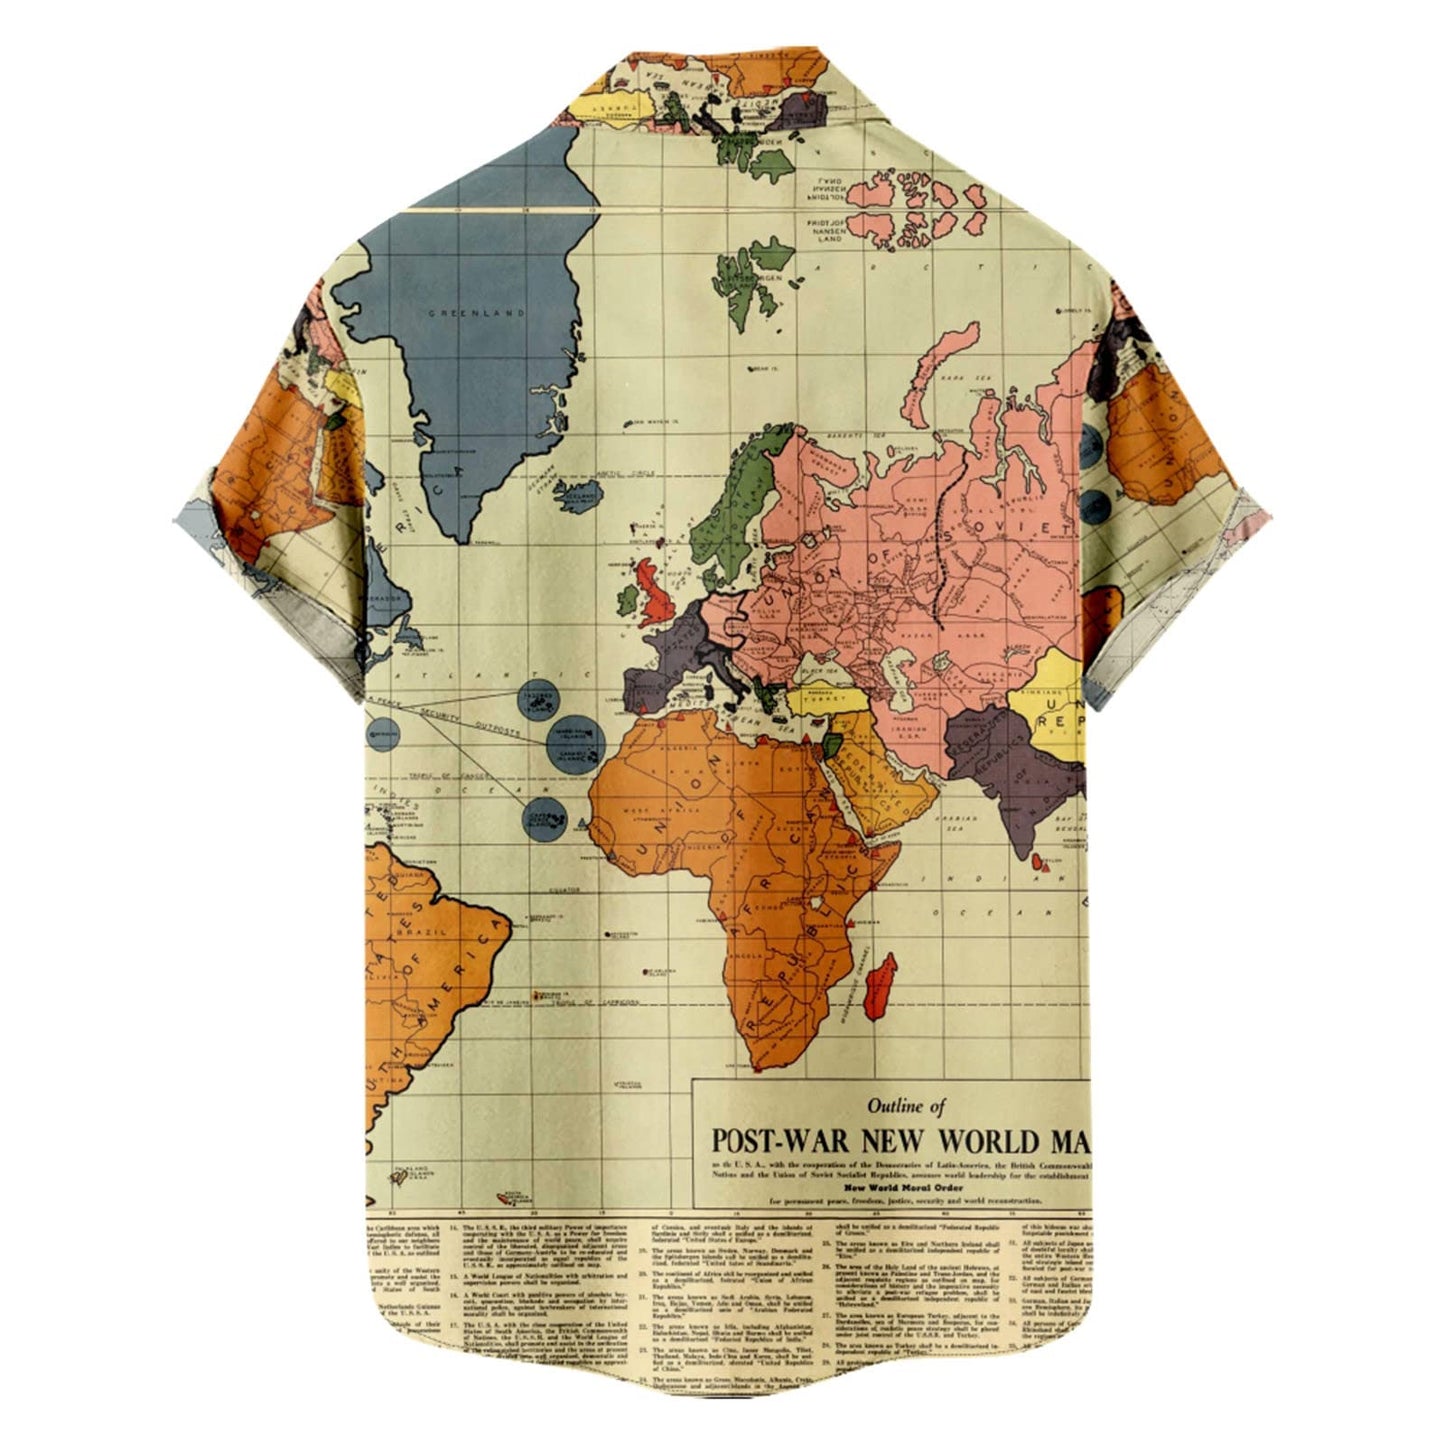 World Map Print Summer Top